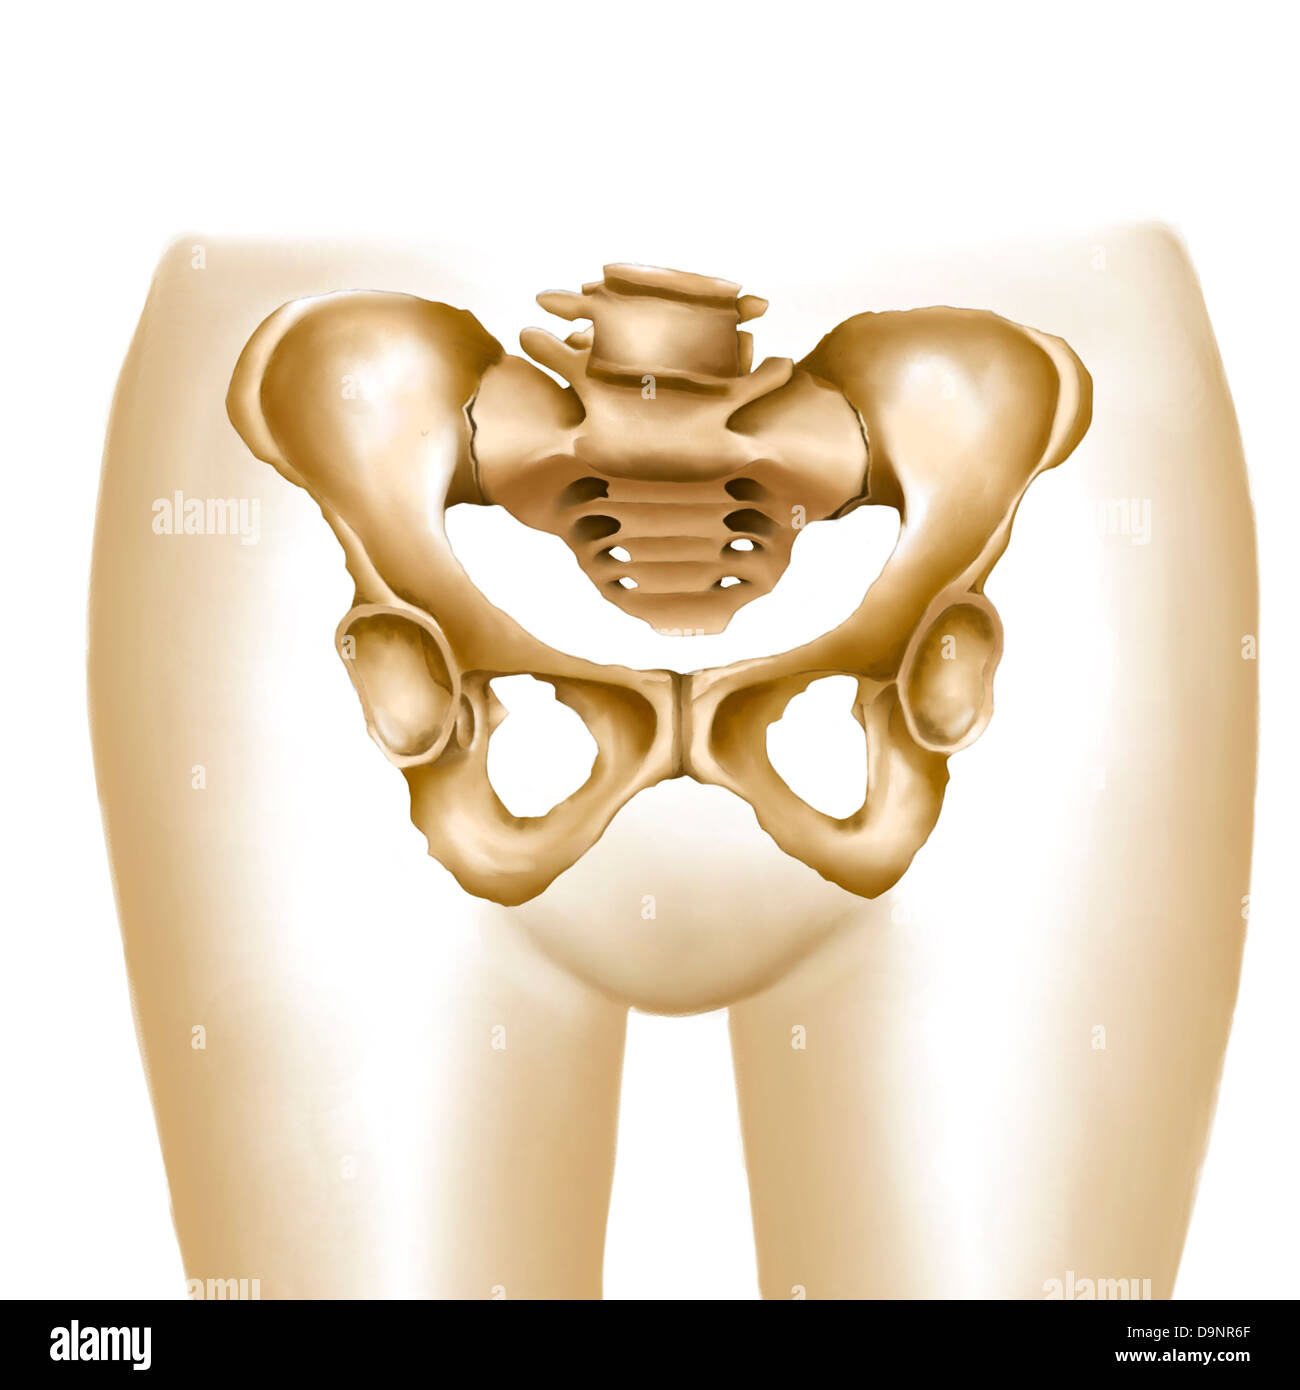 Anatomie de l'os du bassin et des hanches. Banque D'Images